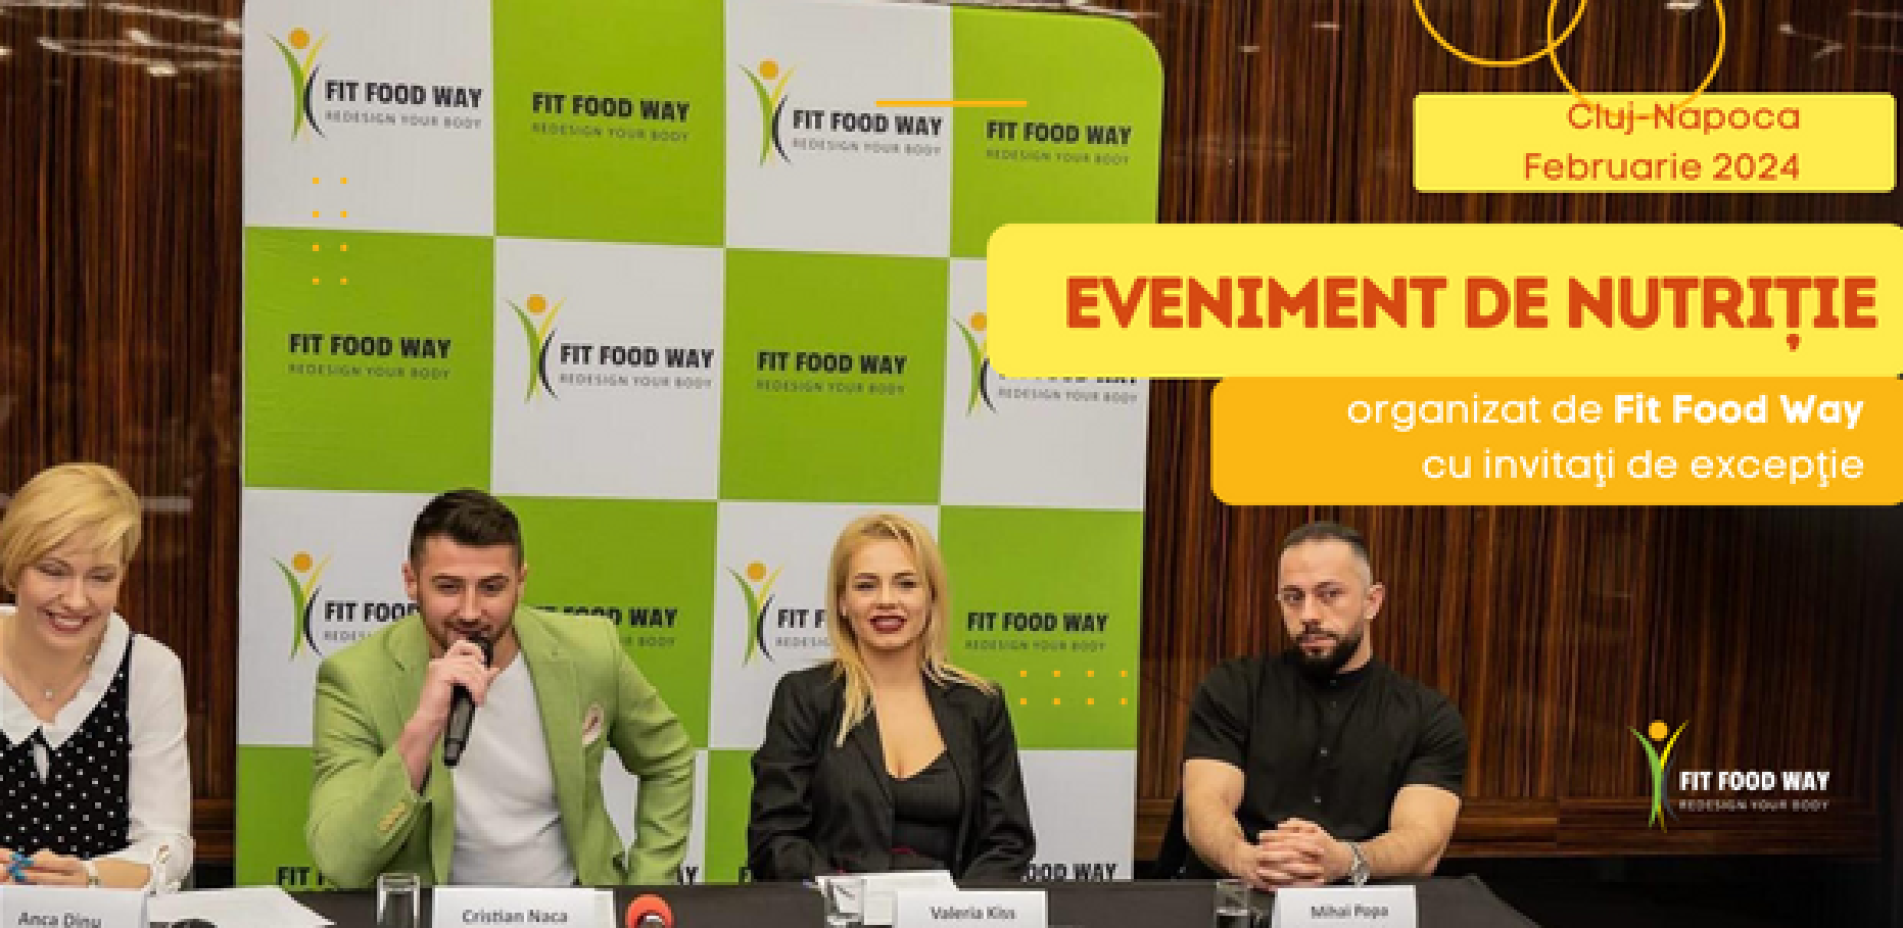 Eveniment organizat de FitFood Way la Cluj-Napoca: Un eveniment de nutriție cu invitați de excepție